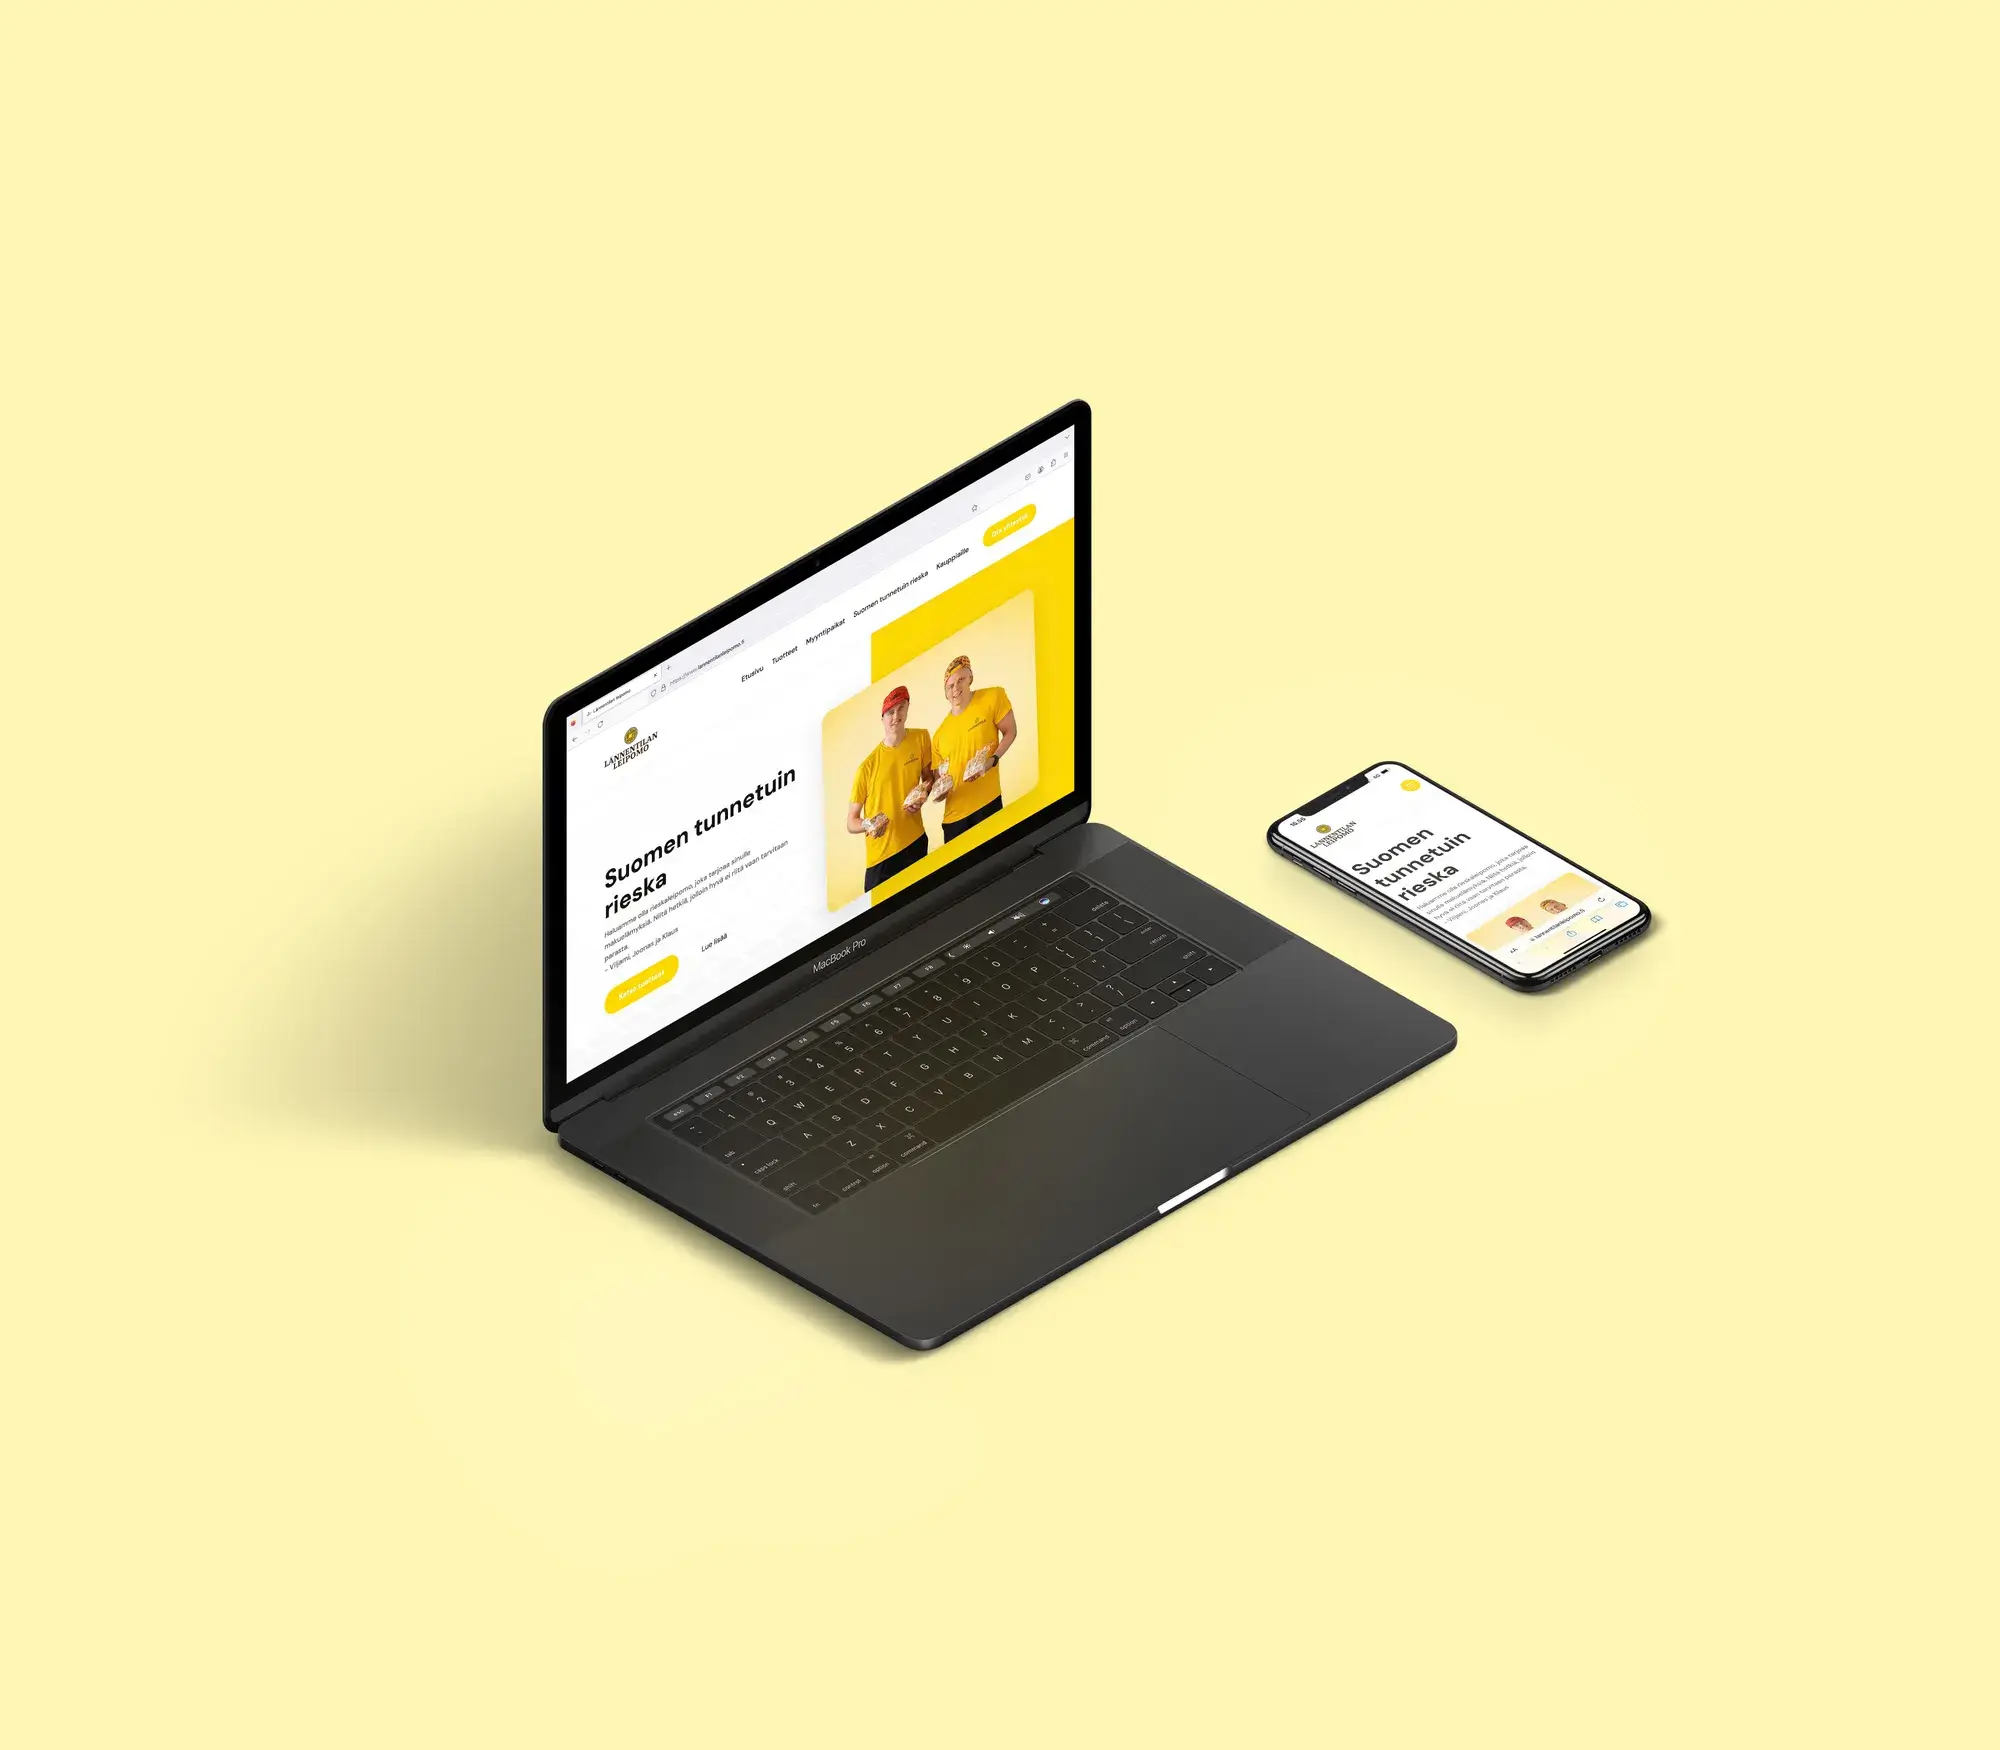 Kannettava tietokone ja älypuhelin,  joissa on auki Lännentilan leipomon verkkosivut.